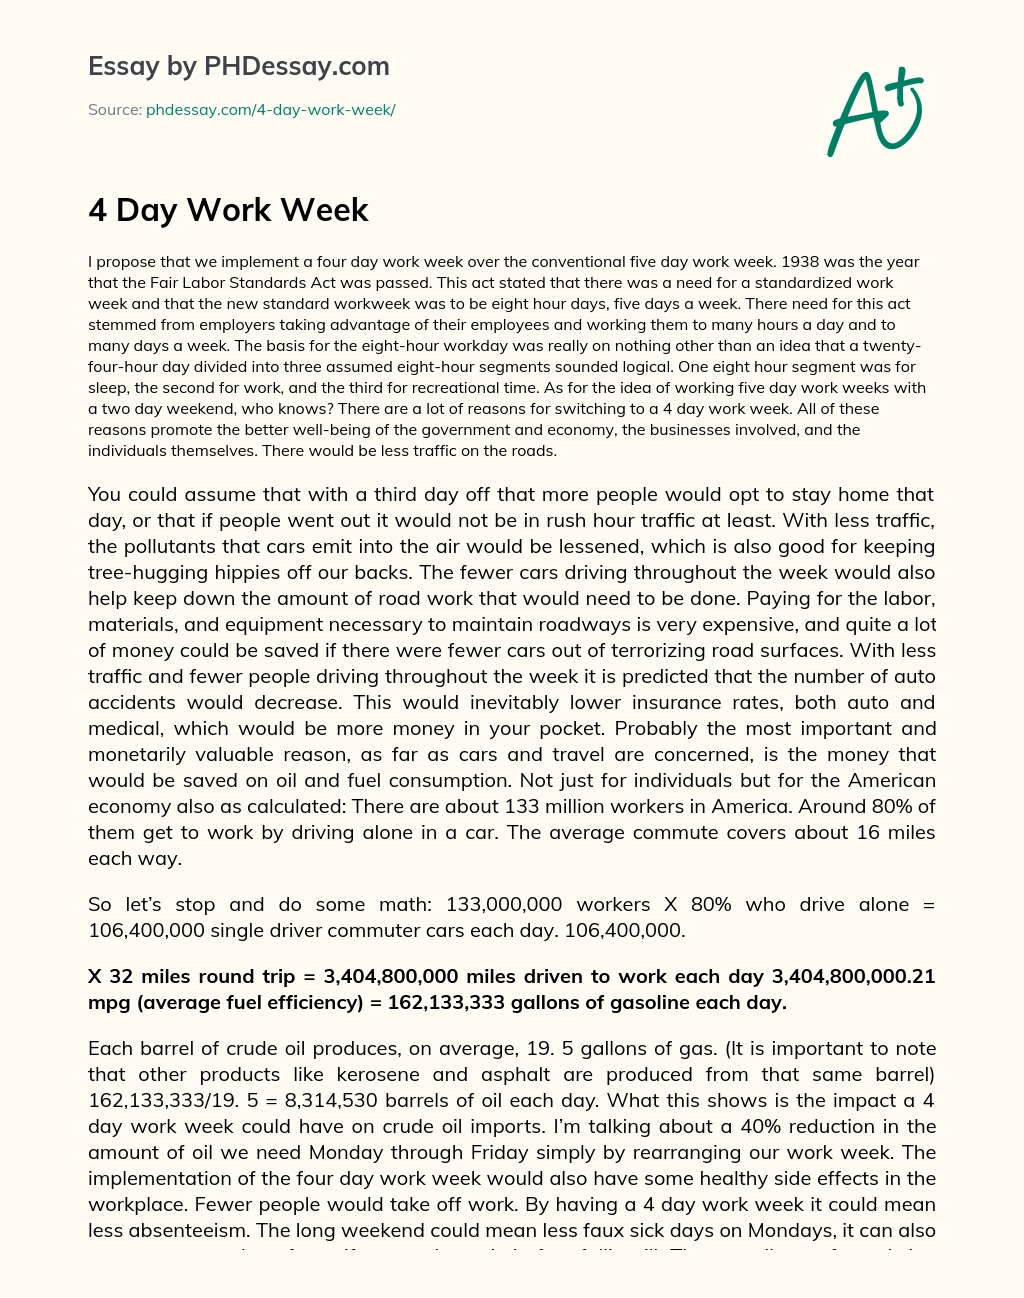 4 Day Work Week essay